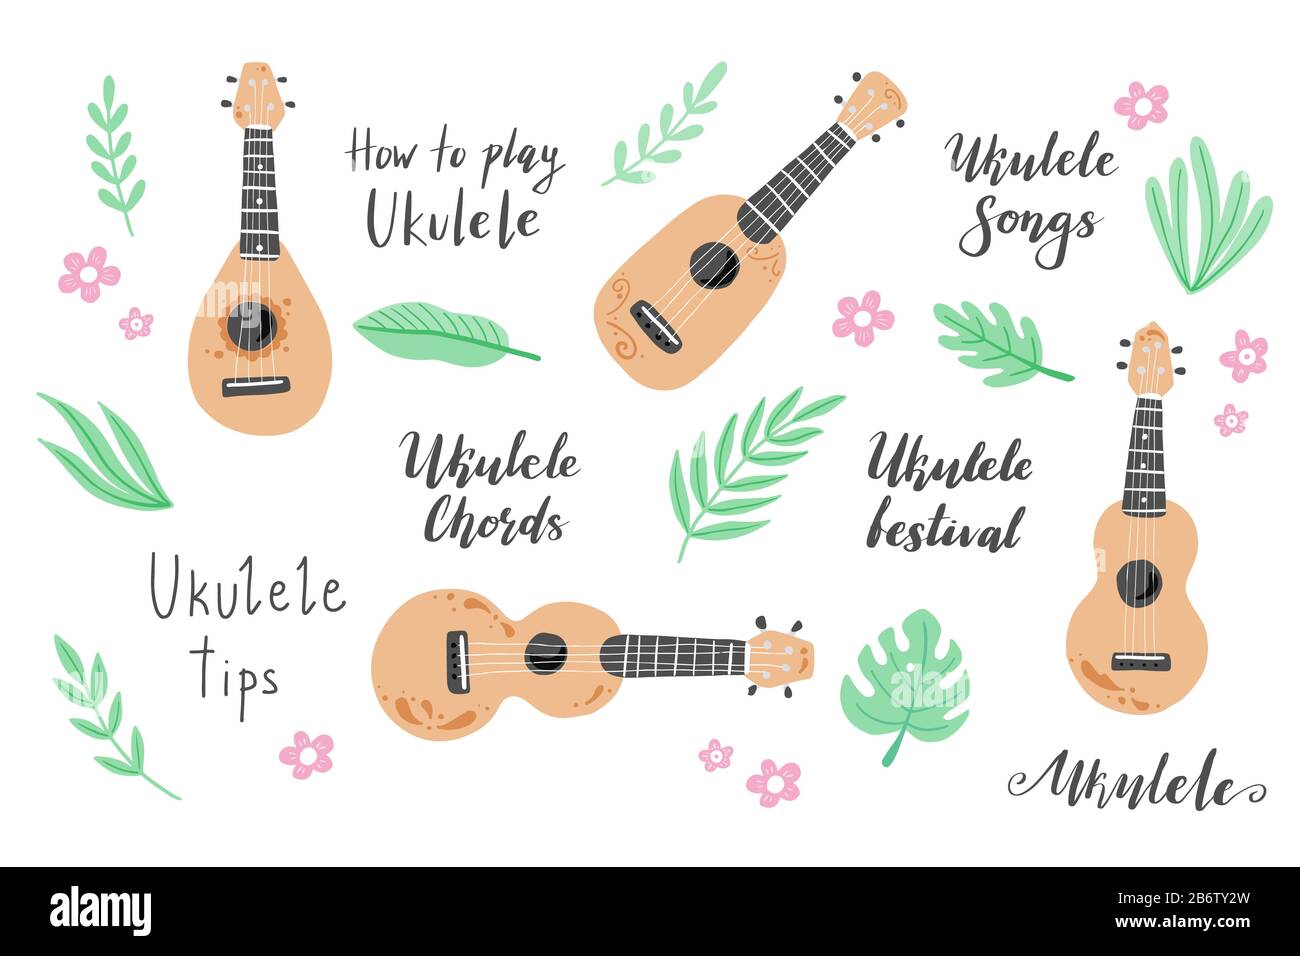 Ensemble de dessin animé ukulele avec texte lettrage pour le cours ukulele, canal, logo design. Petite guitare avec feuille tropique, décoration florale de style hawaï. Illuataration vectorielle du style dessiné à la main. Illustration de Vecteur